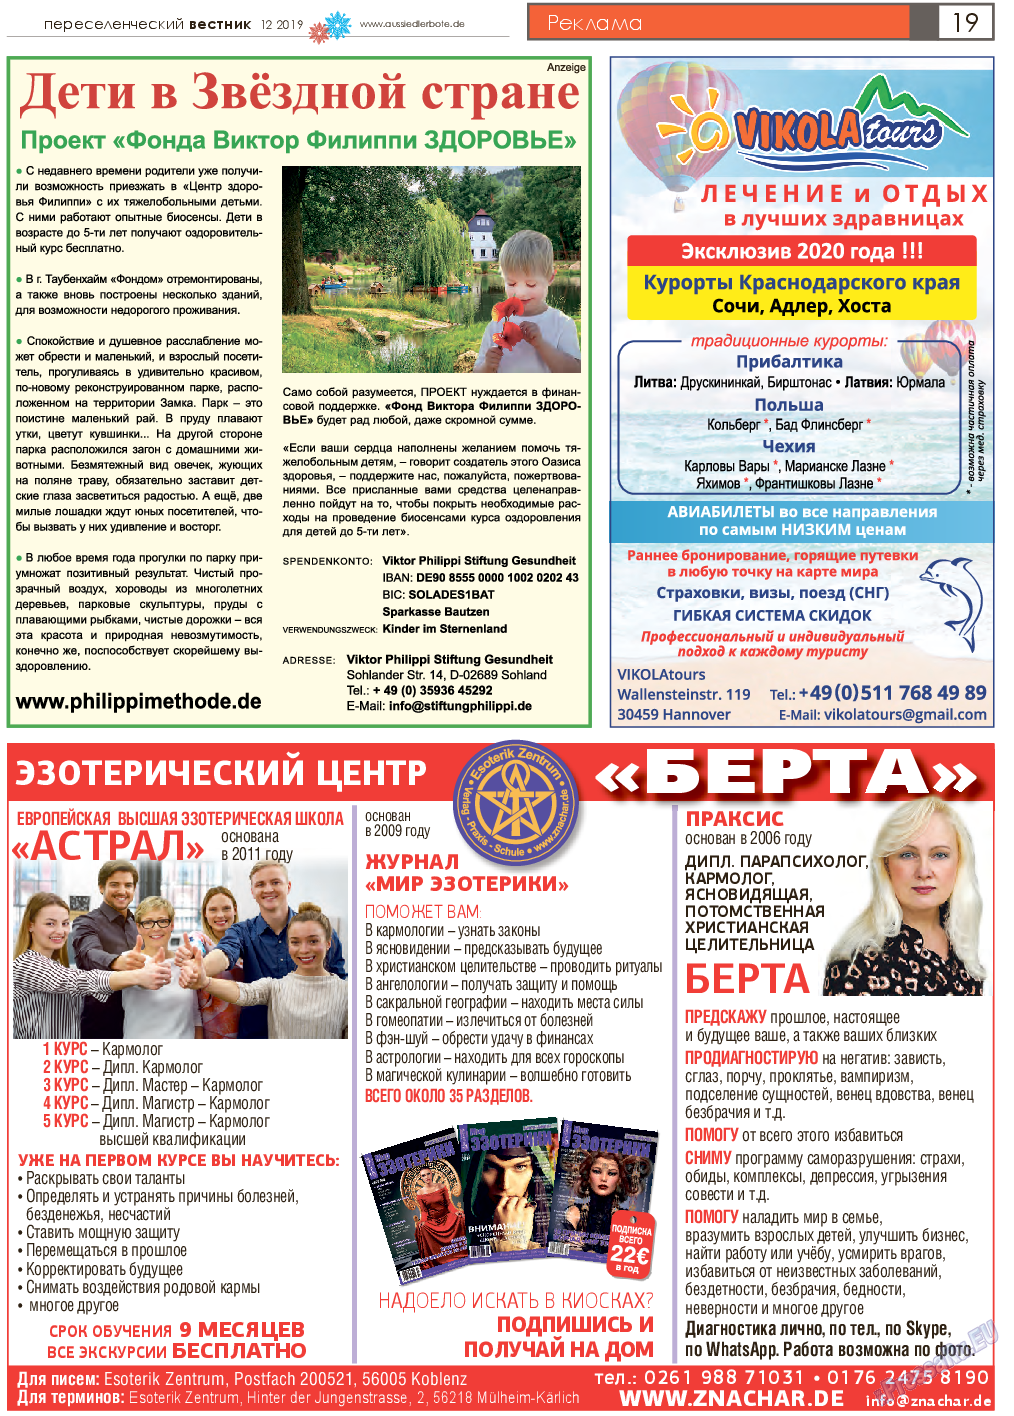 Переселенческий вестник (газета). 2019 год, номер 12, стр. 19